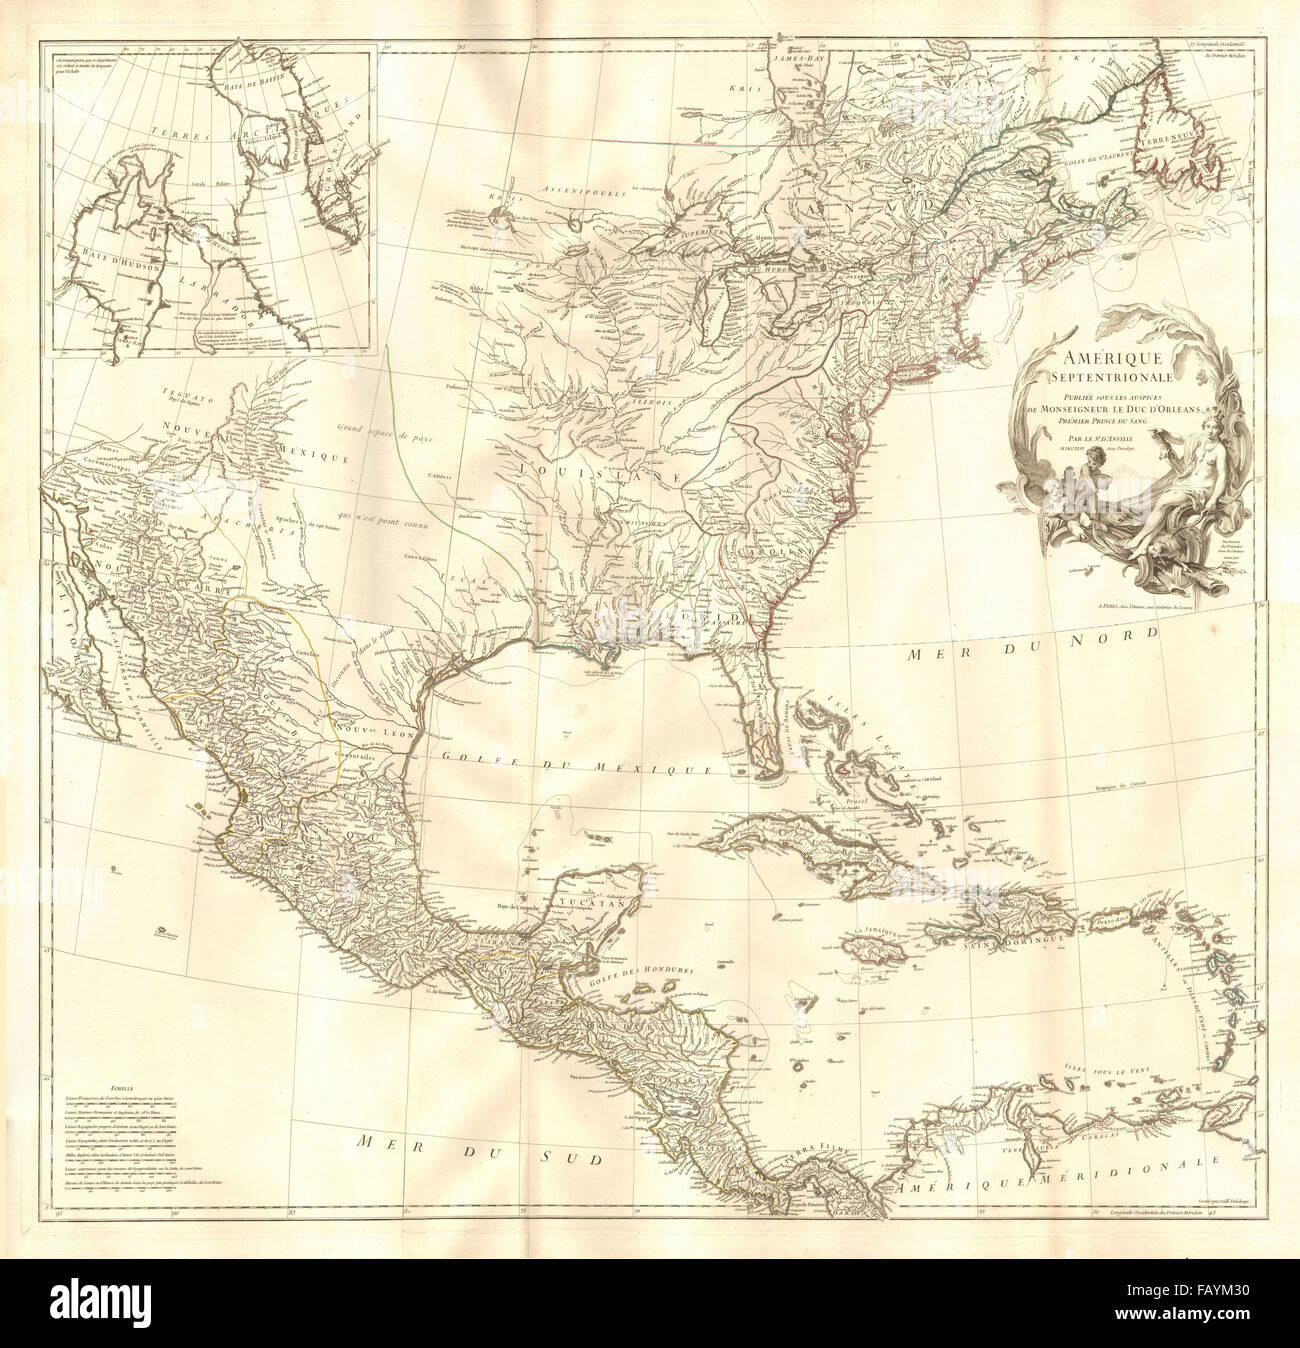 Amérique Septentrional. Britische Französisch Spanisch North America.D'ANVILLE 1746 Karte Stockfoto